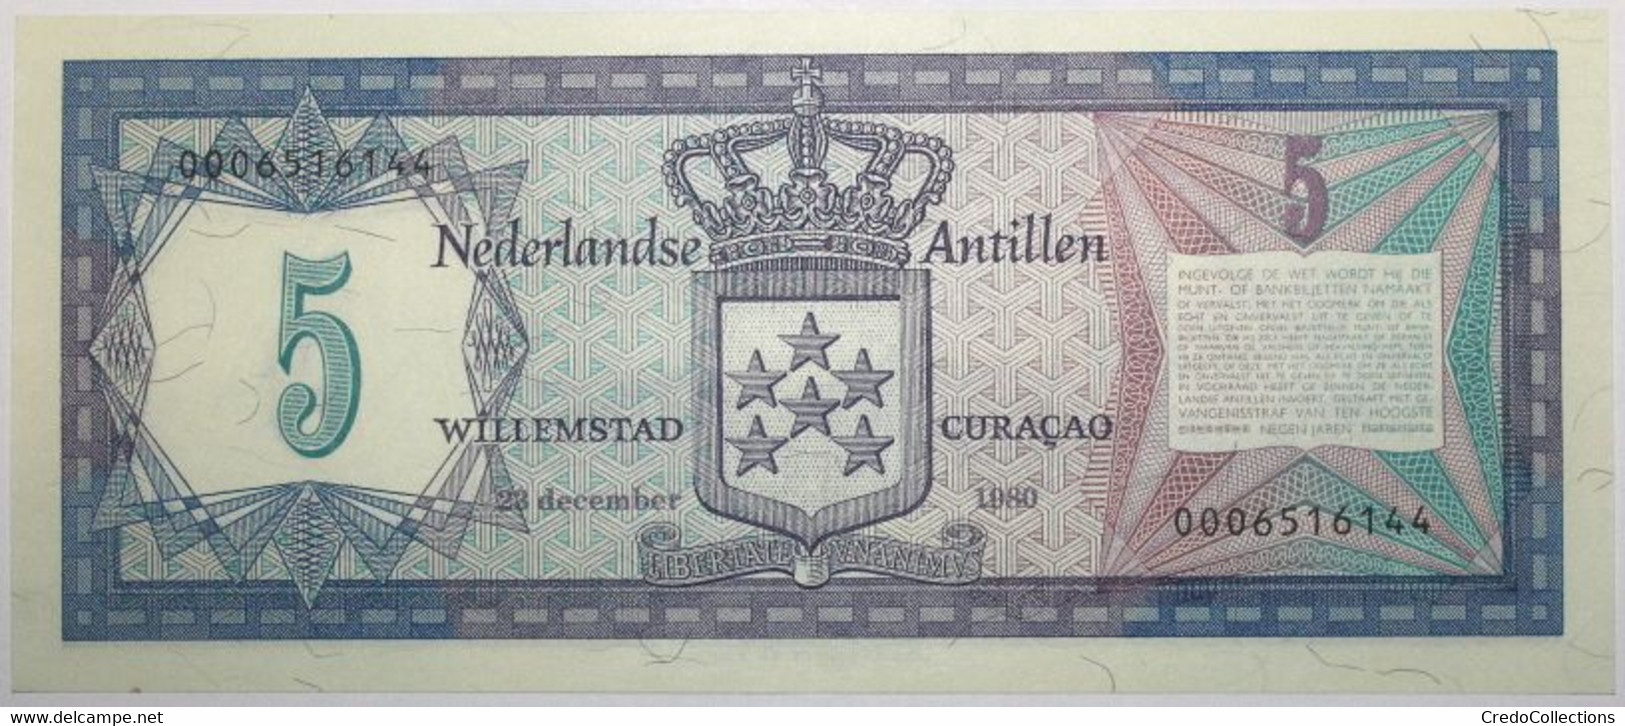 Antilles Néerlandaises - 5 Gulden - 1980 - PICK 15a - SPL - Nederlandse Antillen (...-1986)